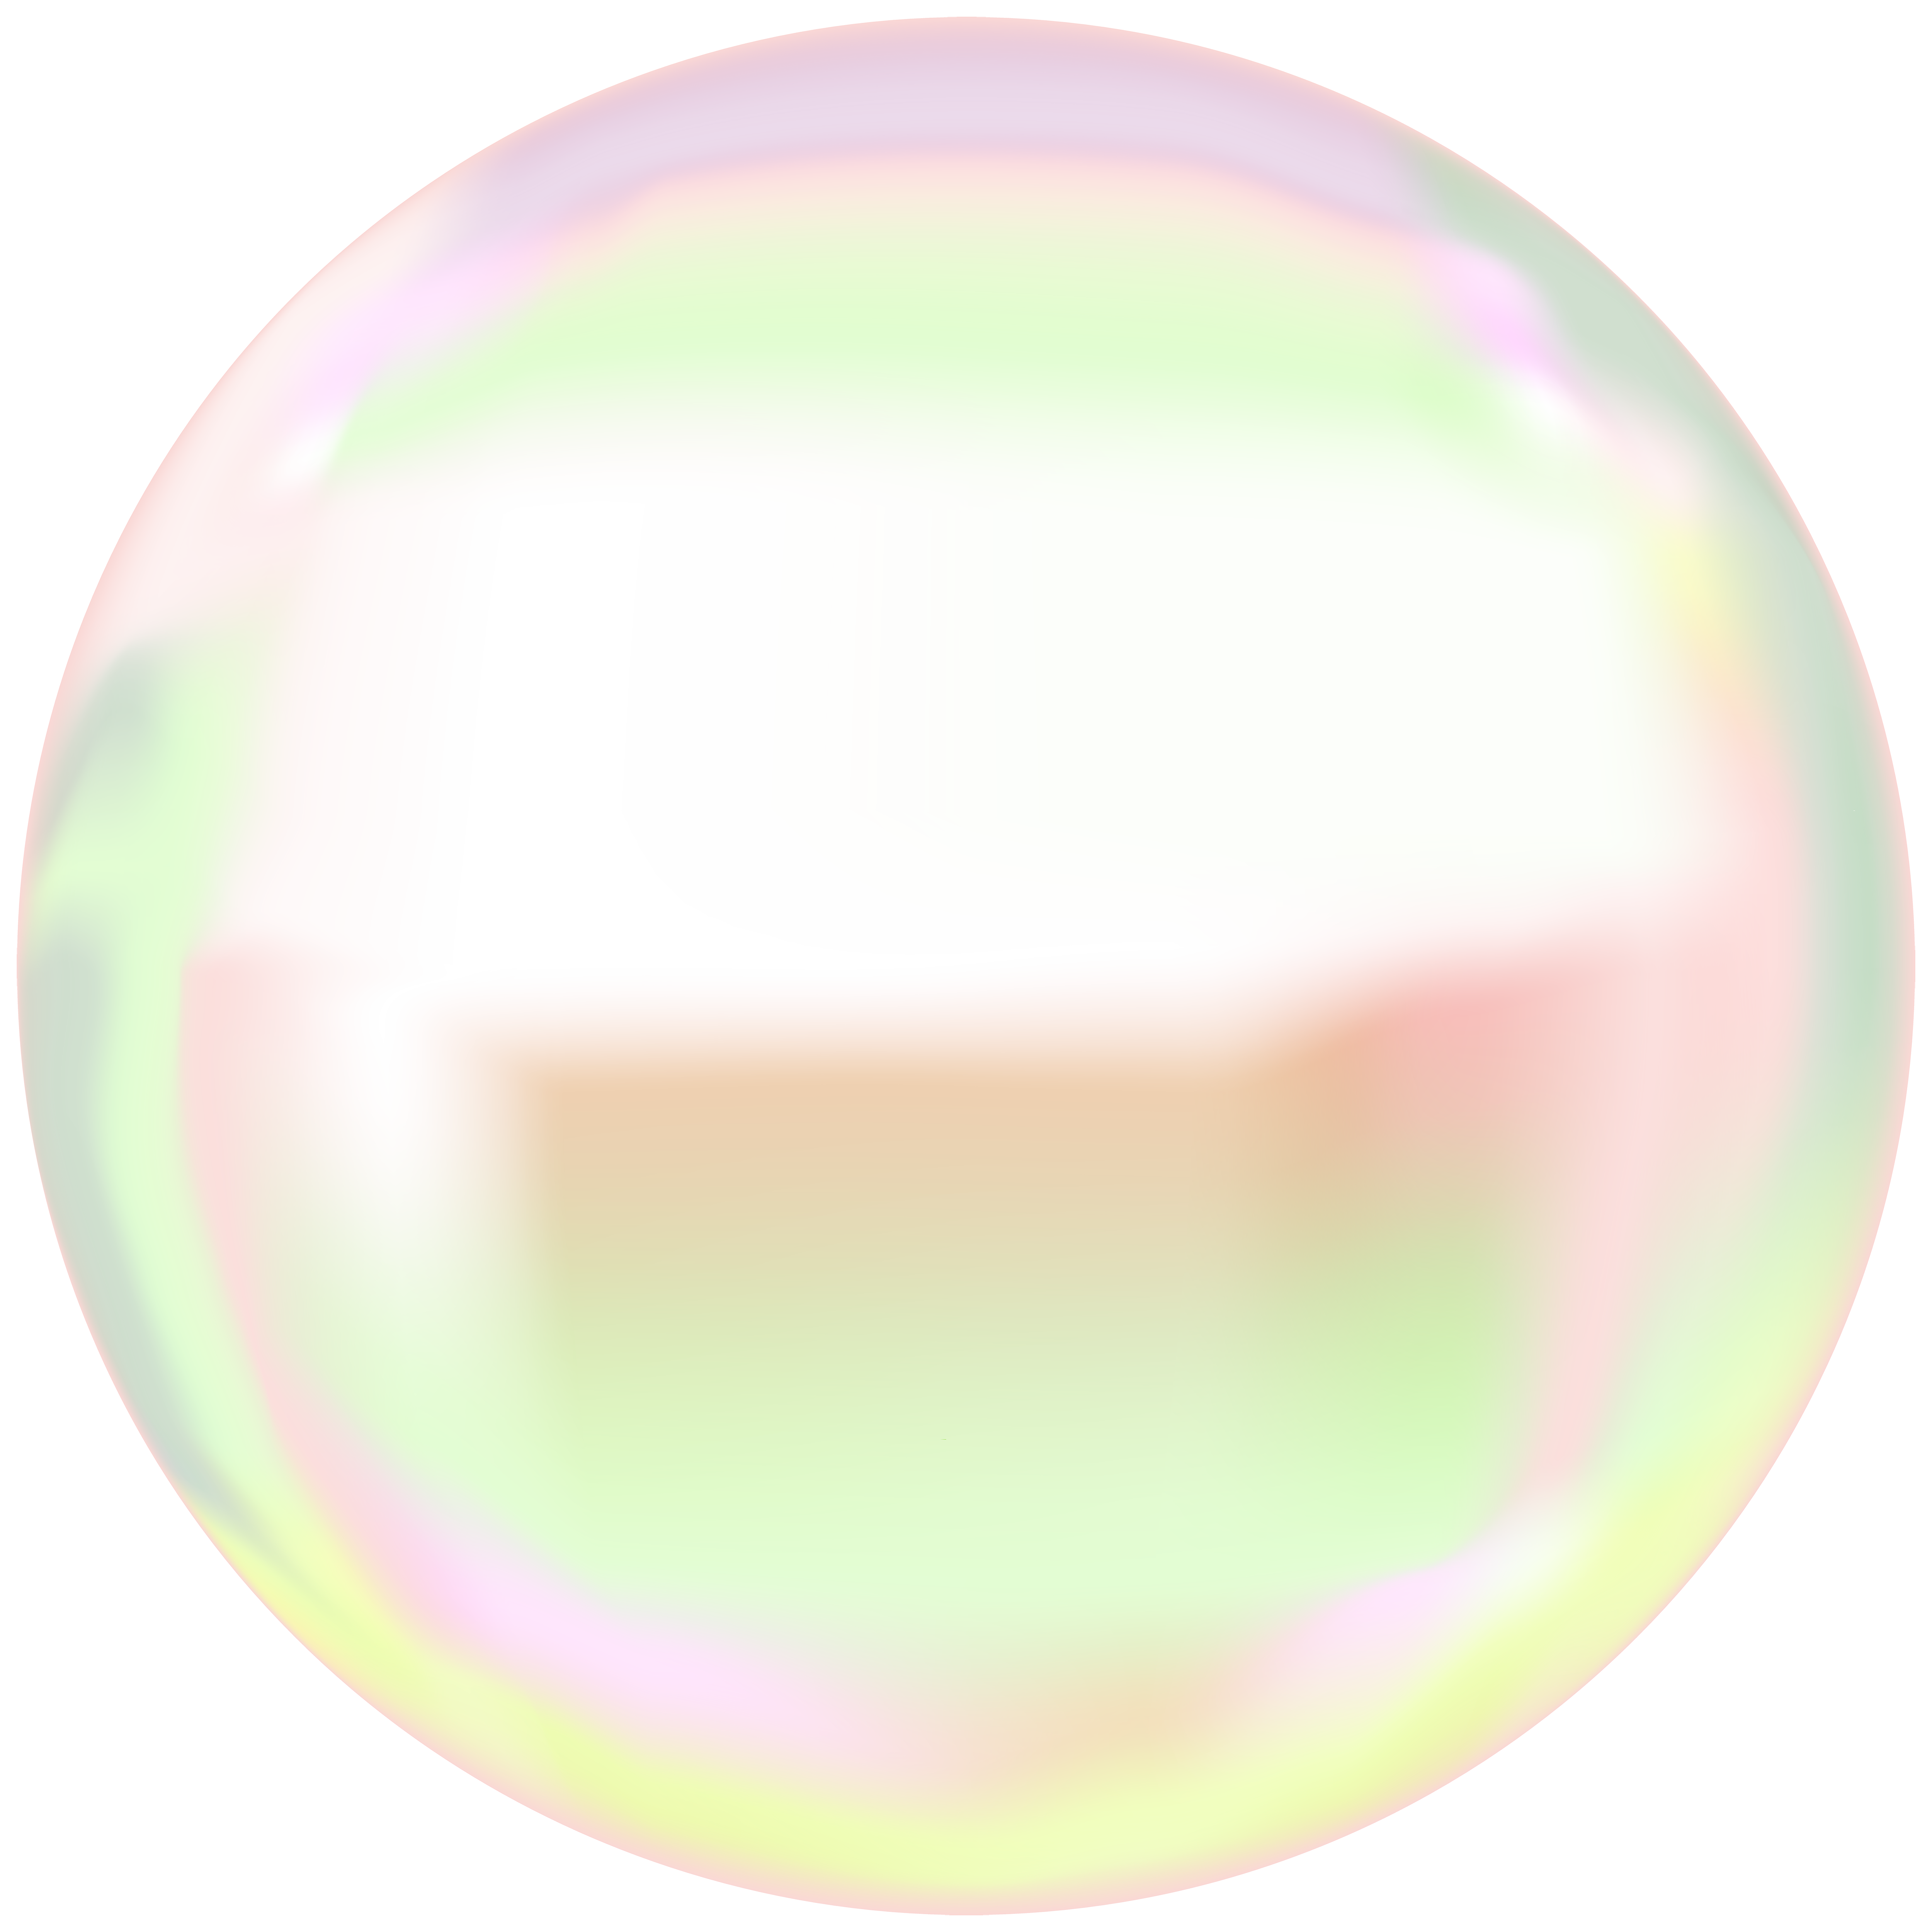 bubble PNG transparent image download, size: 5000x5000px